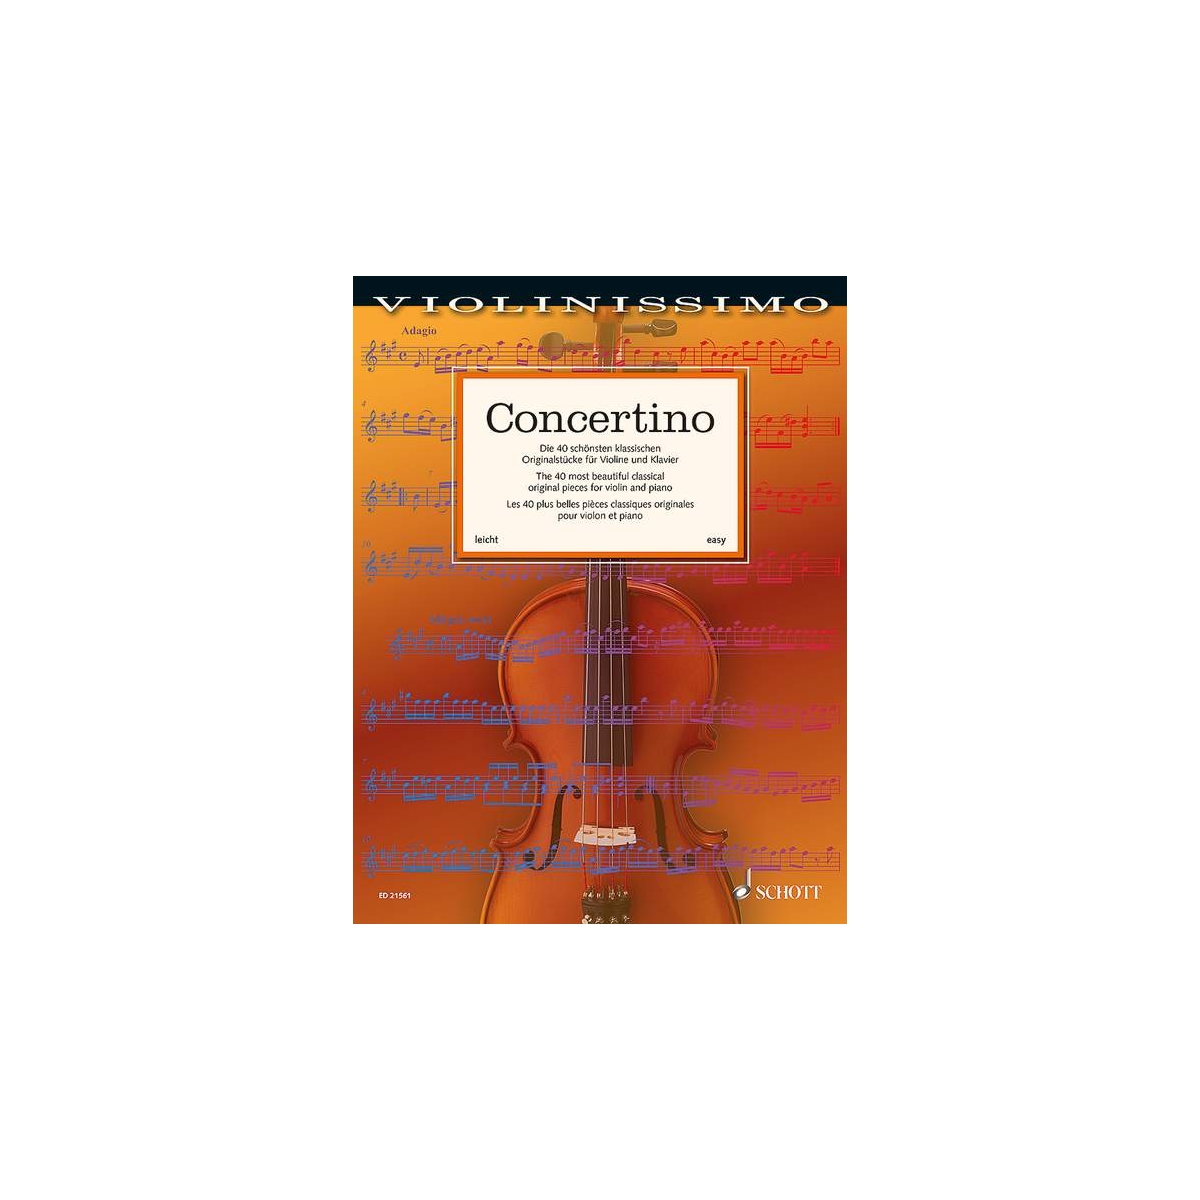 Concertino - 40 classical original pieces